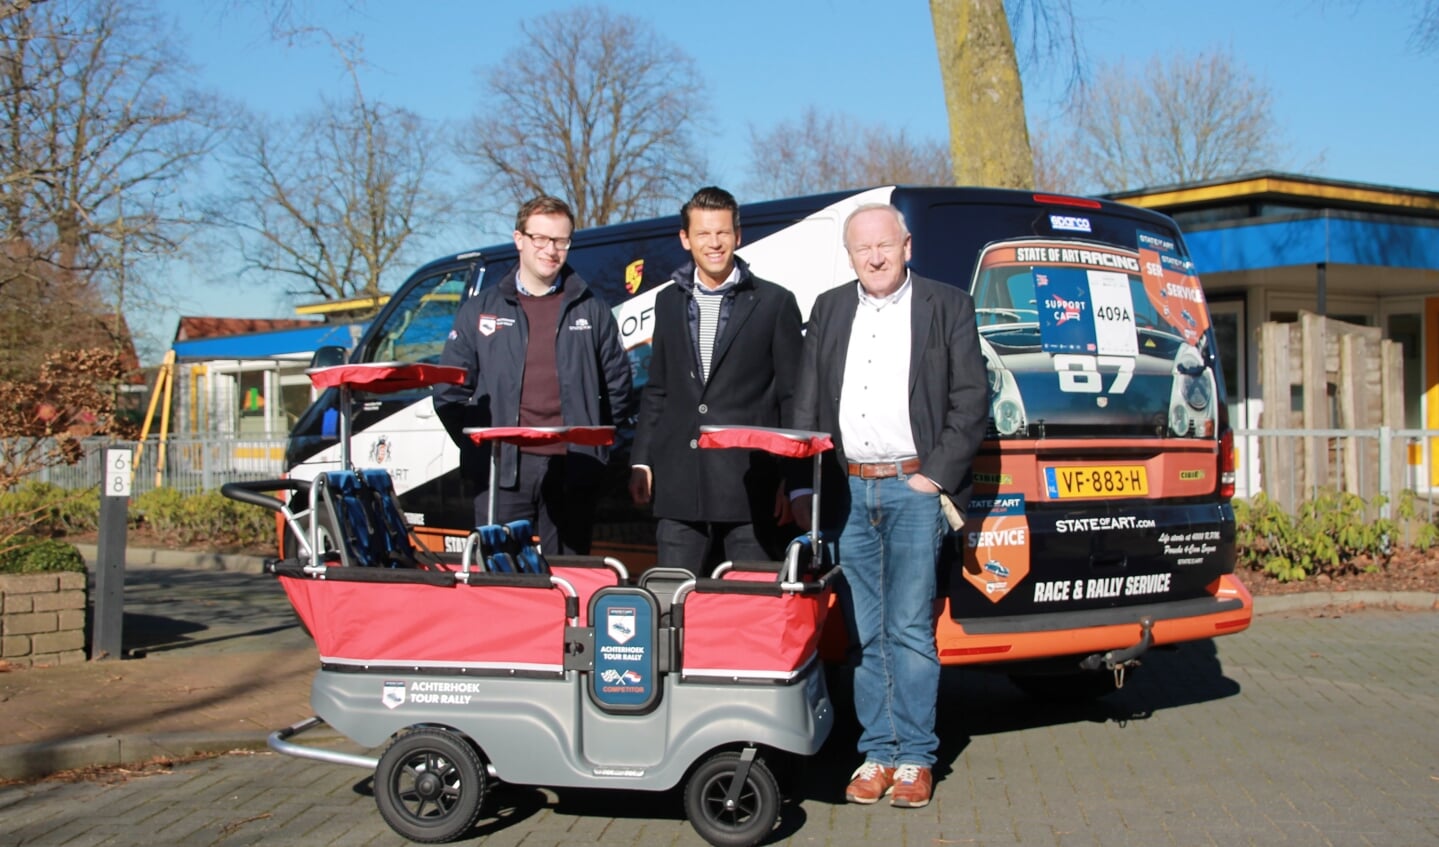 Gijs Konink, Martijn Mateman en Berry Nales mochten de nieuwe aanwinst komen afleveren. Foto: Annekée Cuppers